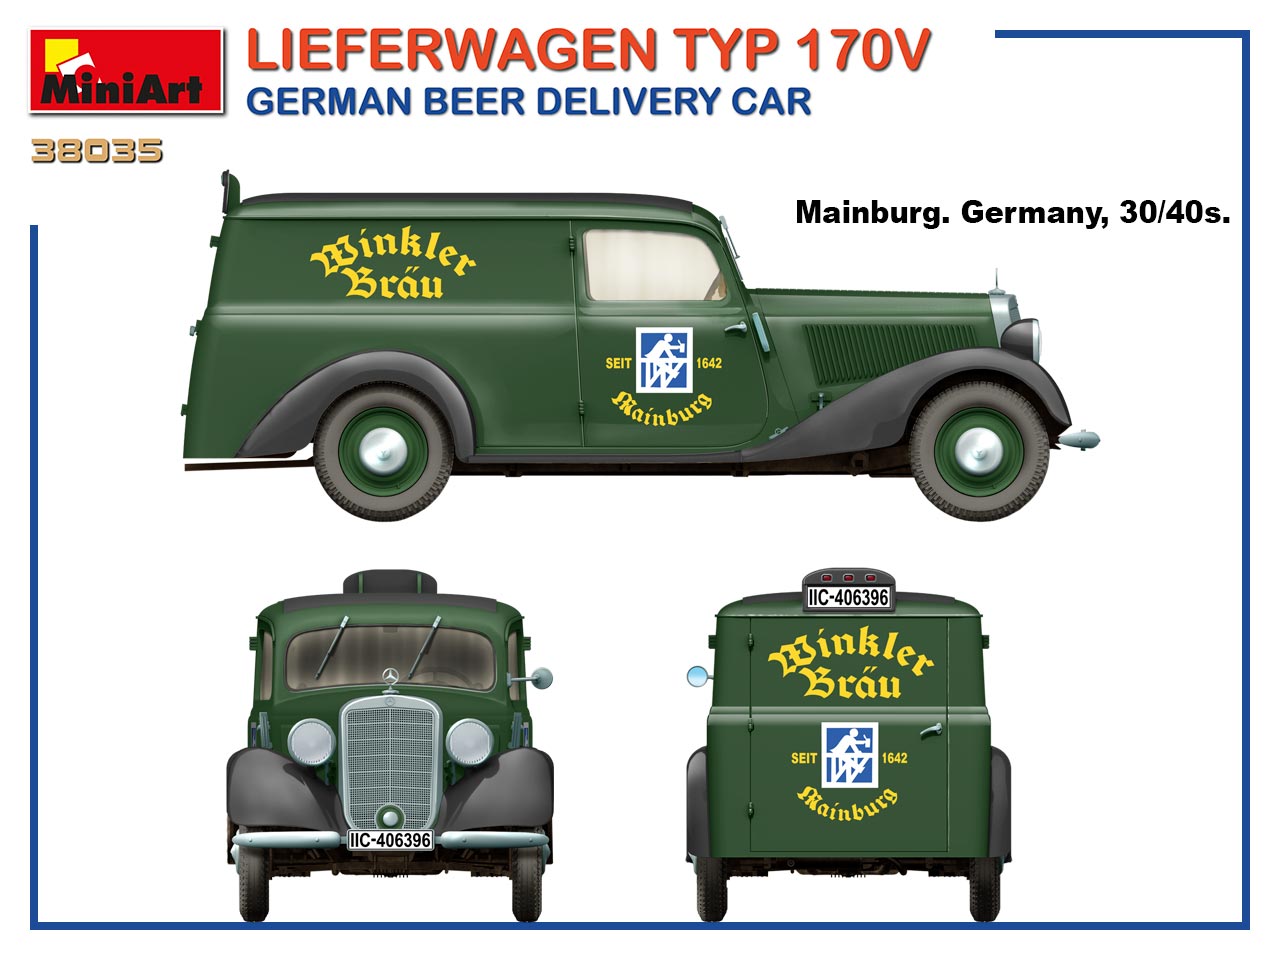 1/35 LIEFERWAGEN TYP 170V GERMAN BEER DELIVERY CAR 38035